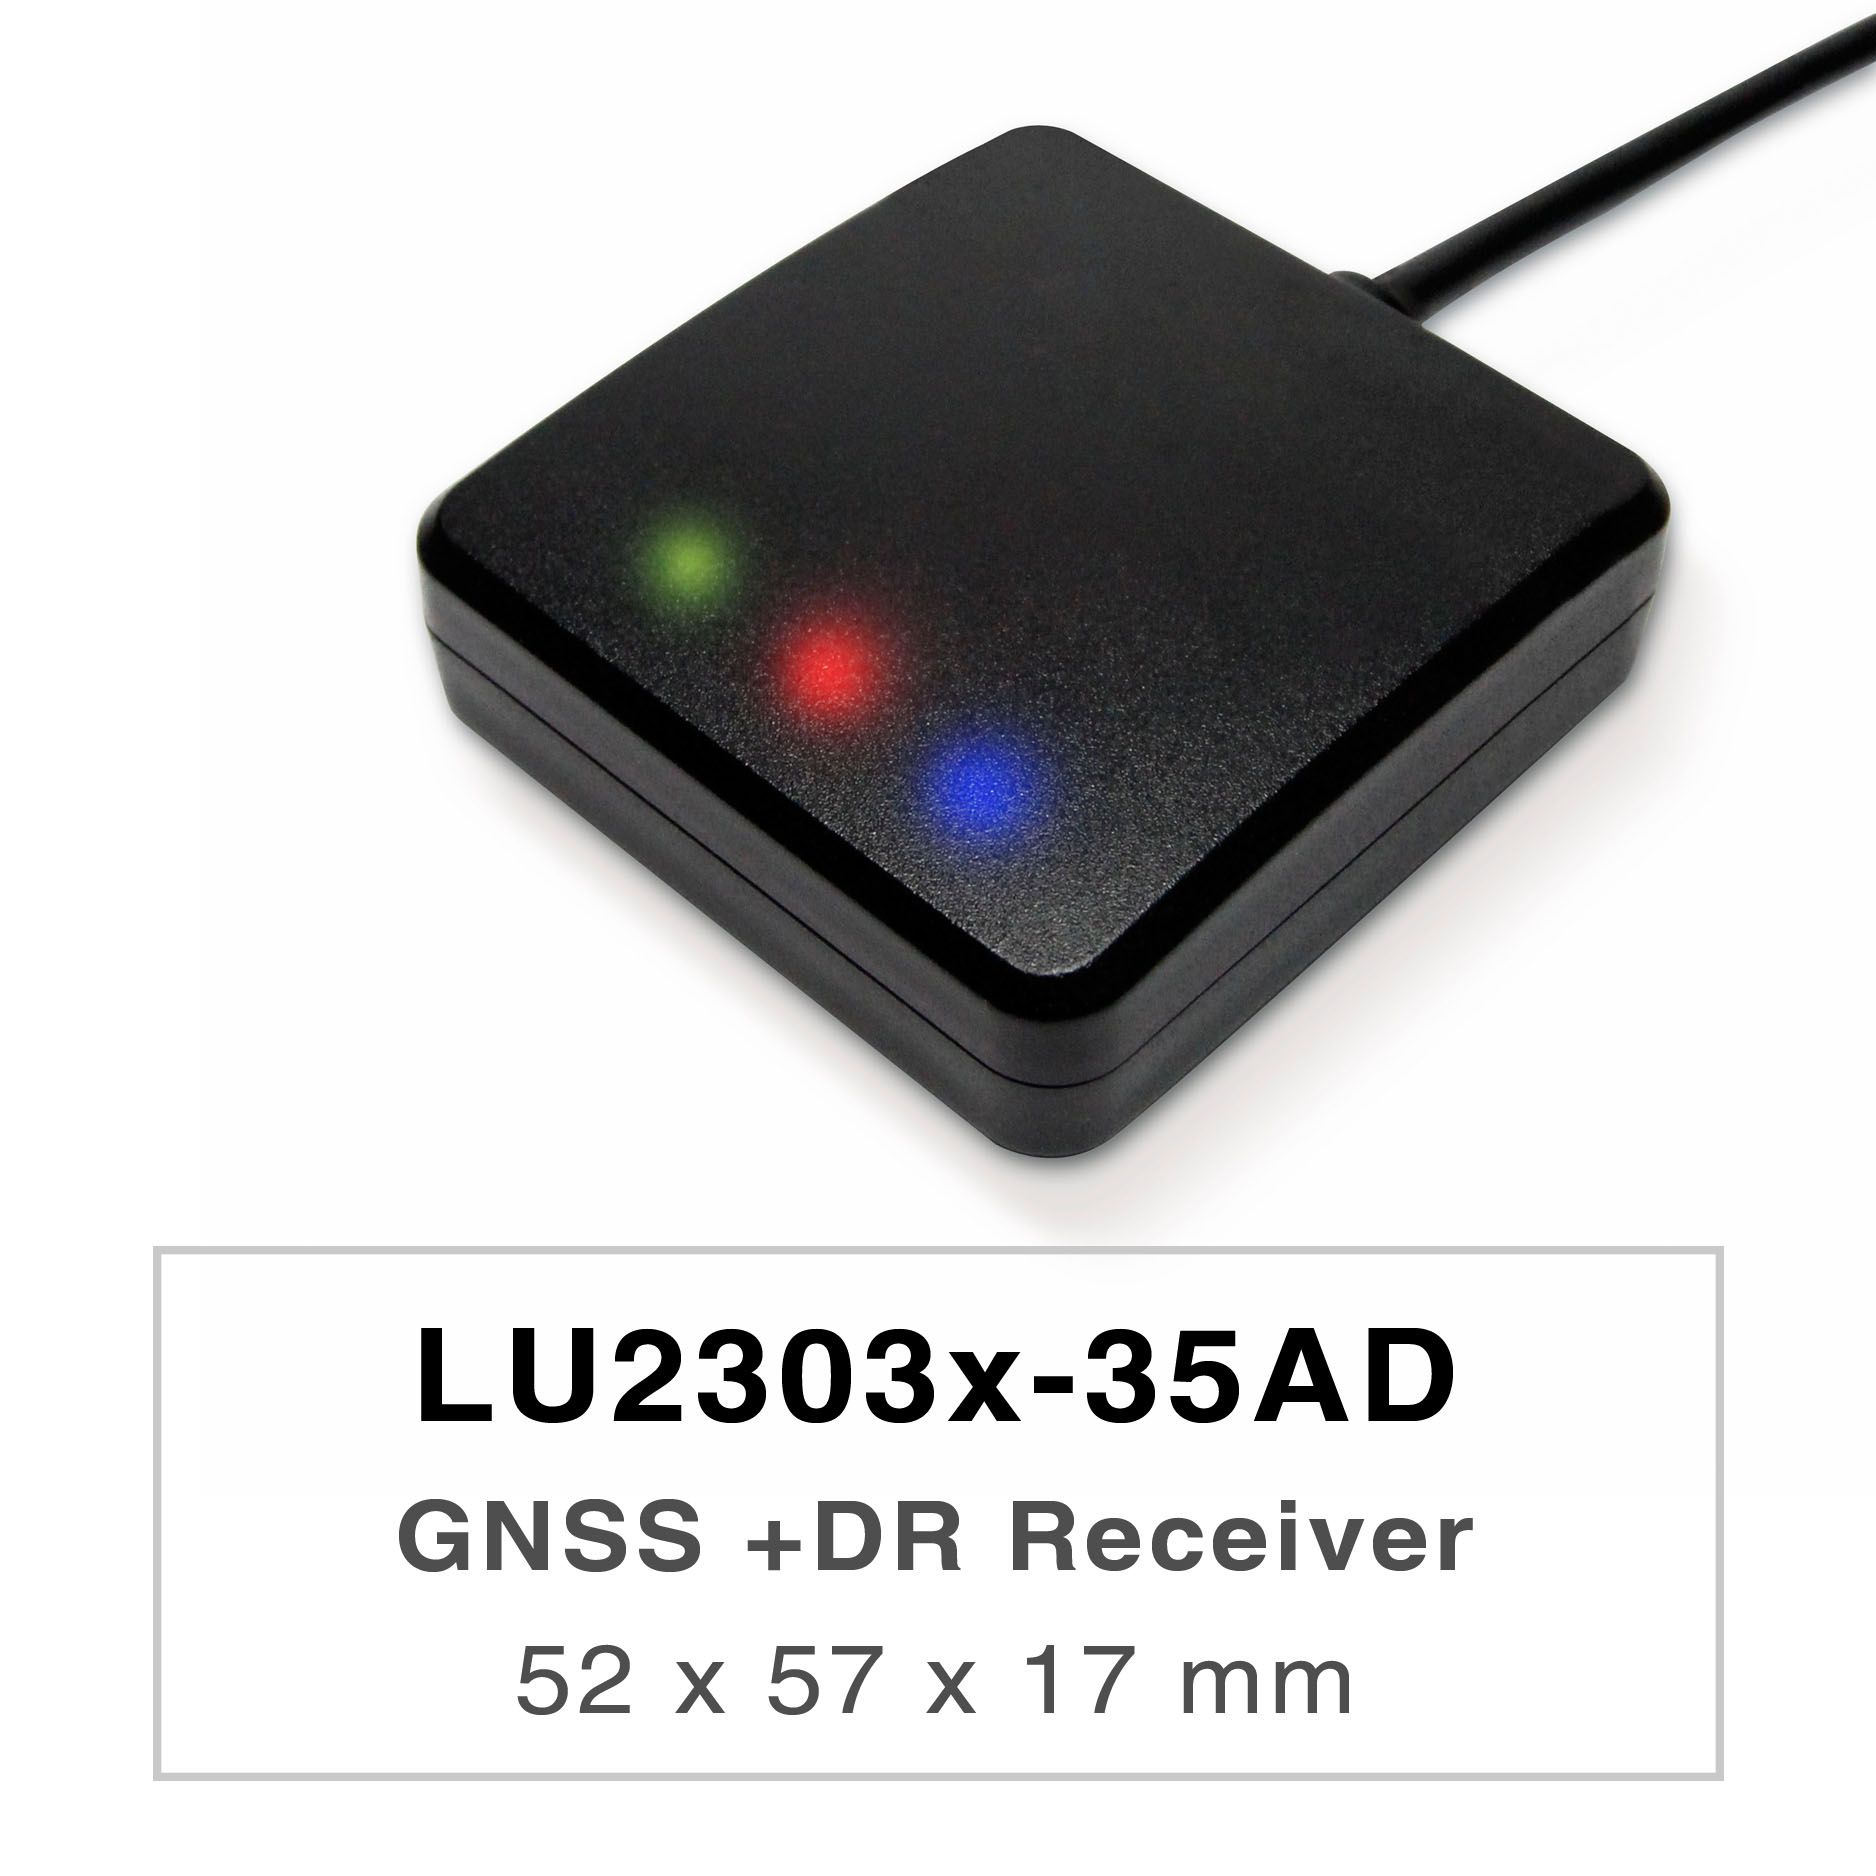 Продукты серии LU2303x-35AD - это высокопроизводительные двухдиапазонные приемники GNSS UDR (Untethered Dead Reckoning) (также известные как GNSS-мыши), способные отслеживать все глобальные гражданские навигационные системы (GPS, ГЛОНАСС, BDS, ГАЛИЛЕО, QZSS). GNSS-мышь будет получать сигналы как L1, так и L5 одновременно, обеспечивая более высокую точность позиционирования.